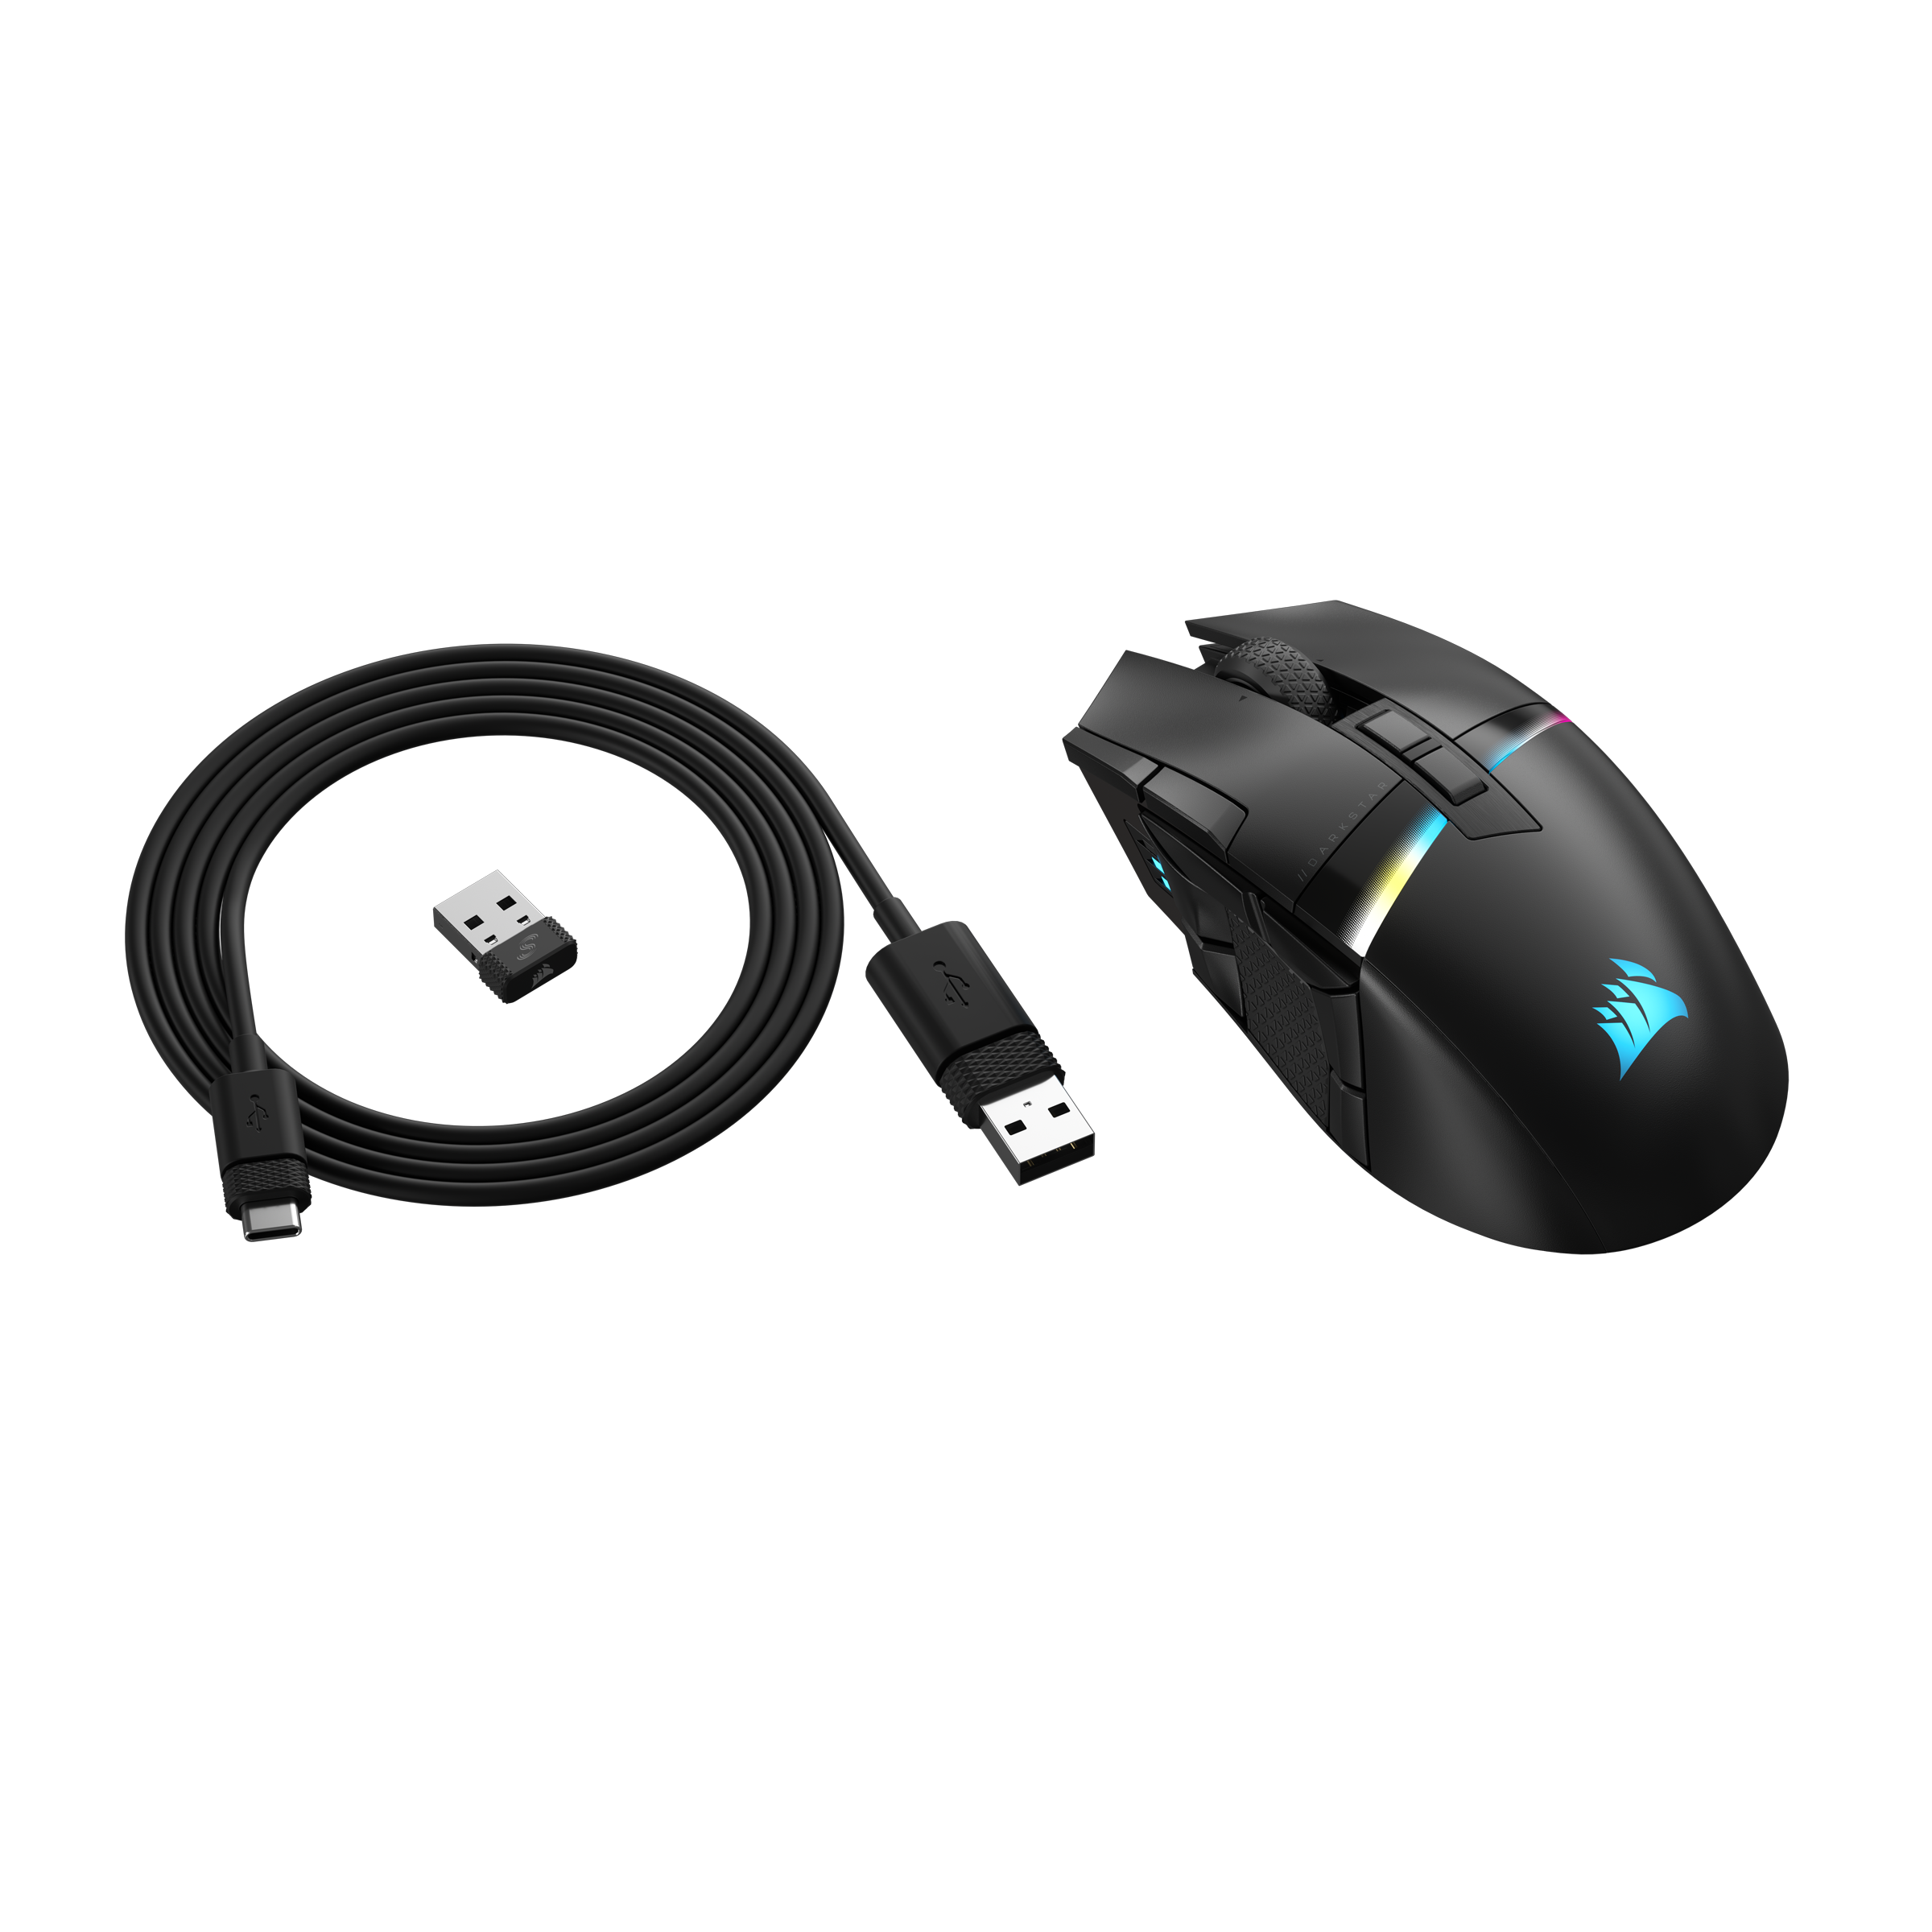 Corsair Gaming-Maus Seitencluster Rechnung kaufen »DARKSTAR auf Bluetooth, 6-Tasten WIRELESS«